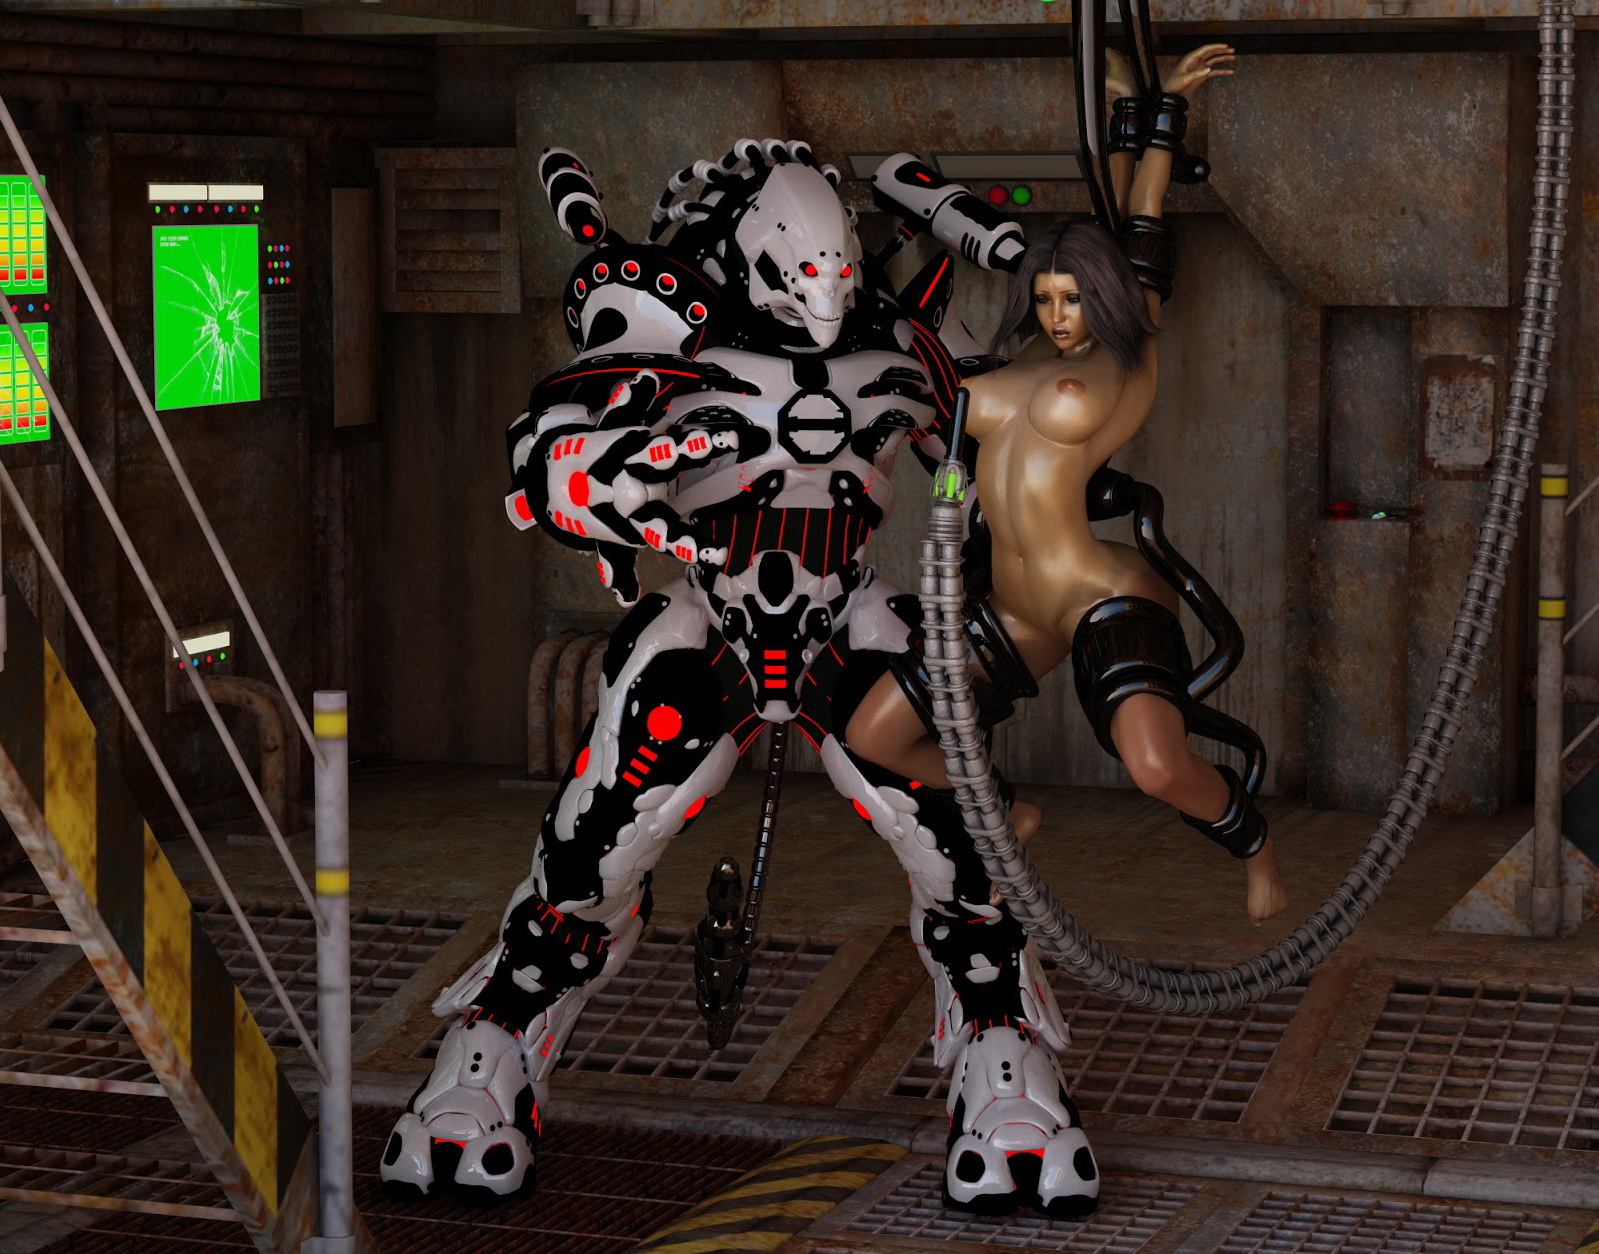 Evil cyborg enjoying captured girl's body